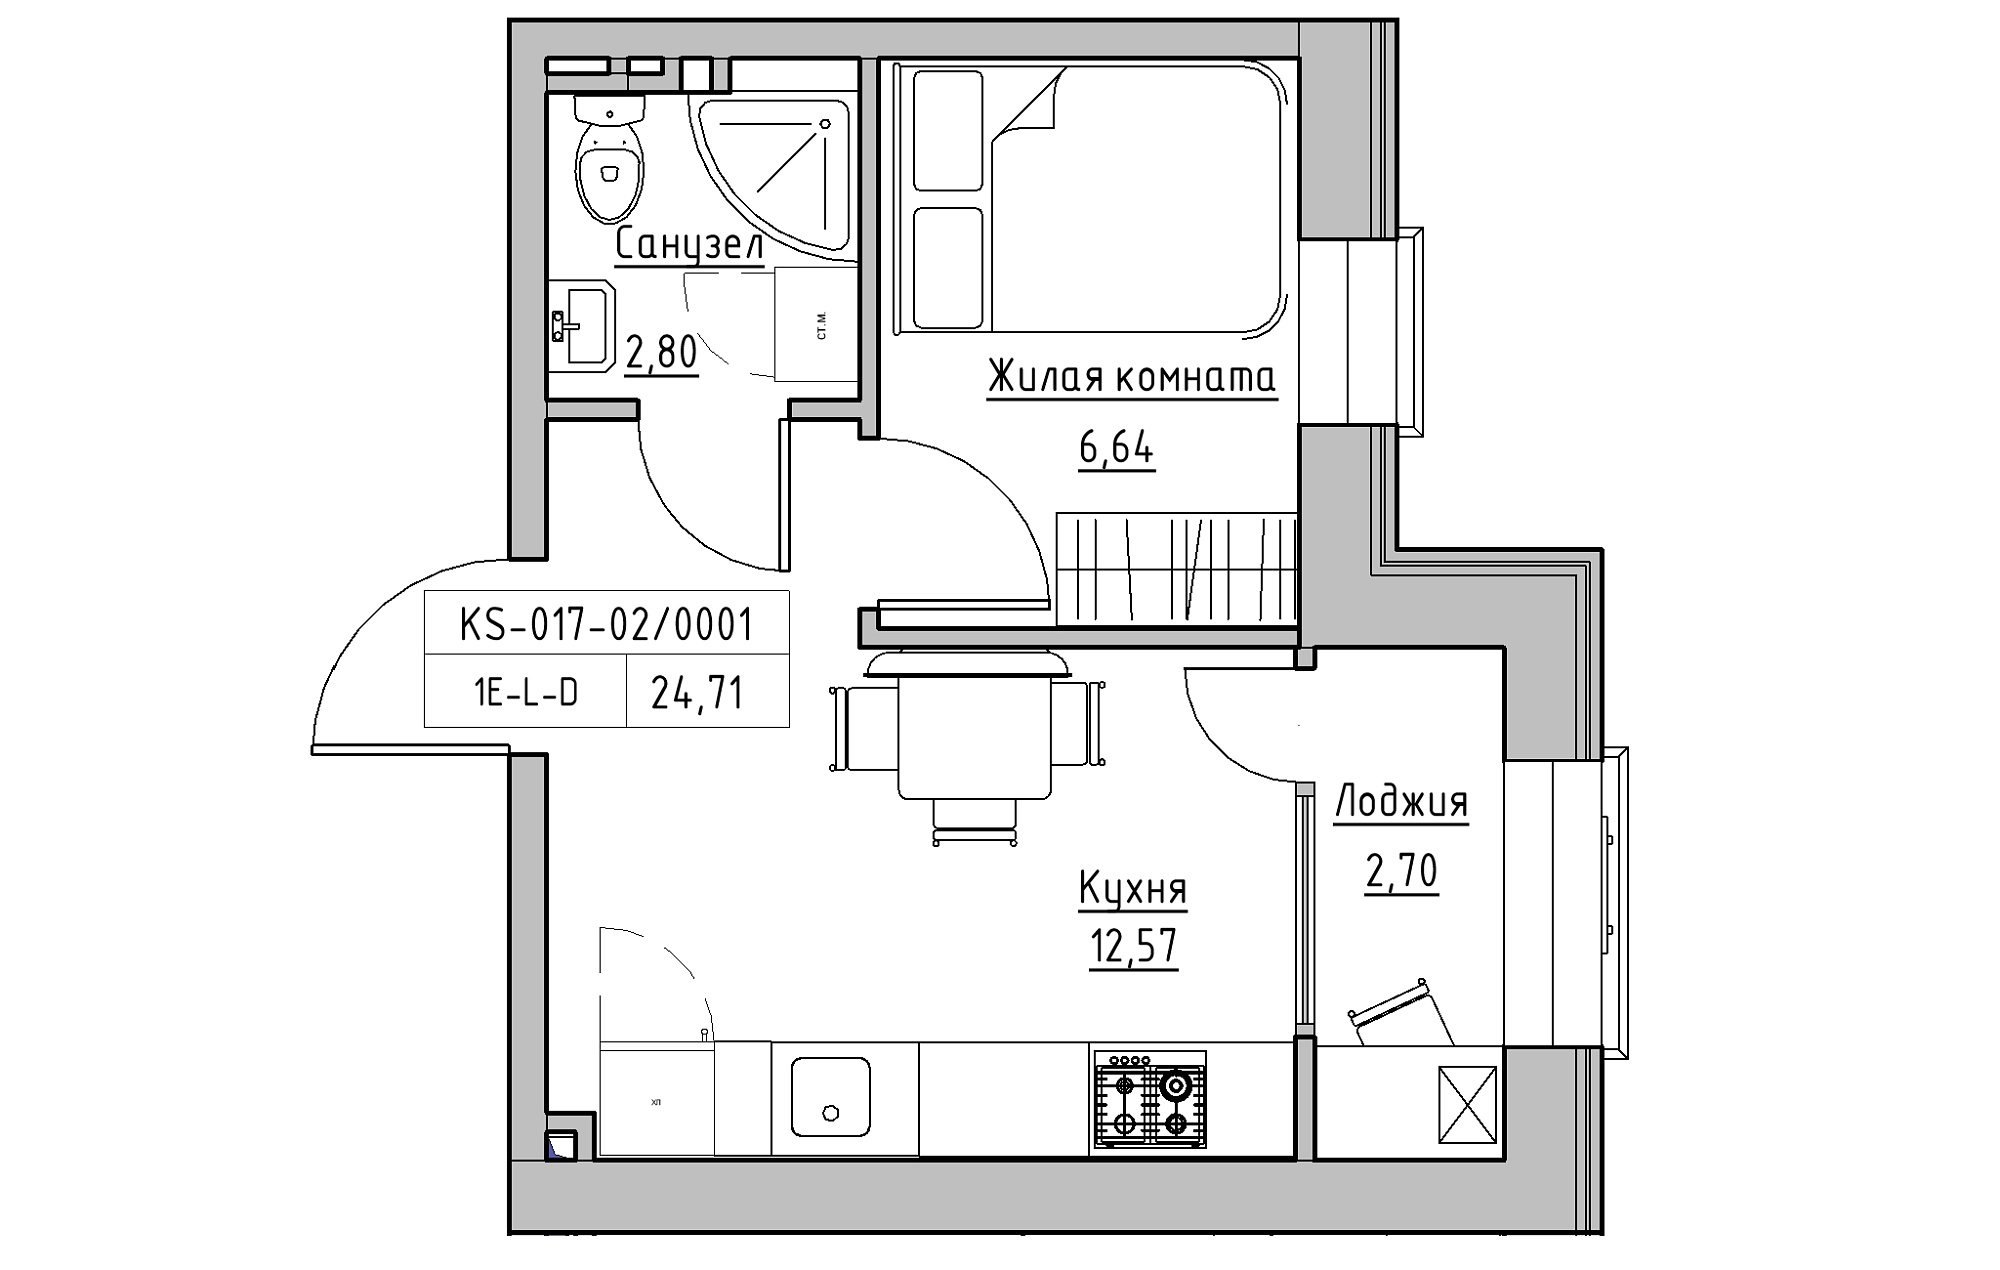 Планировка 1-к квартира площей 24.71м2, KS-017-02/0001.